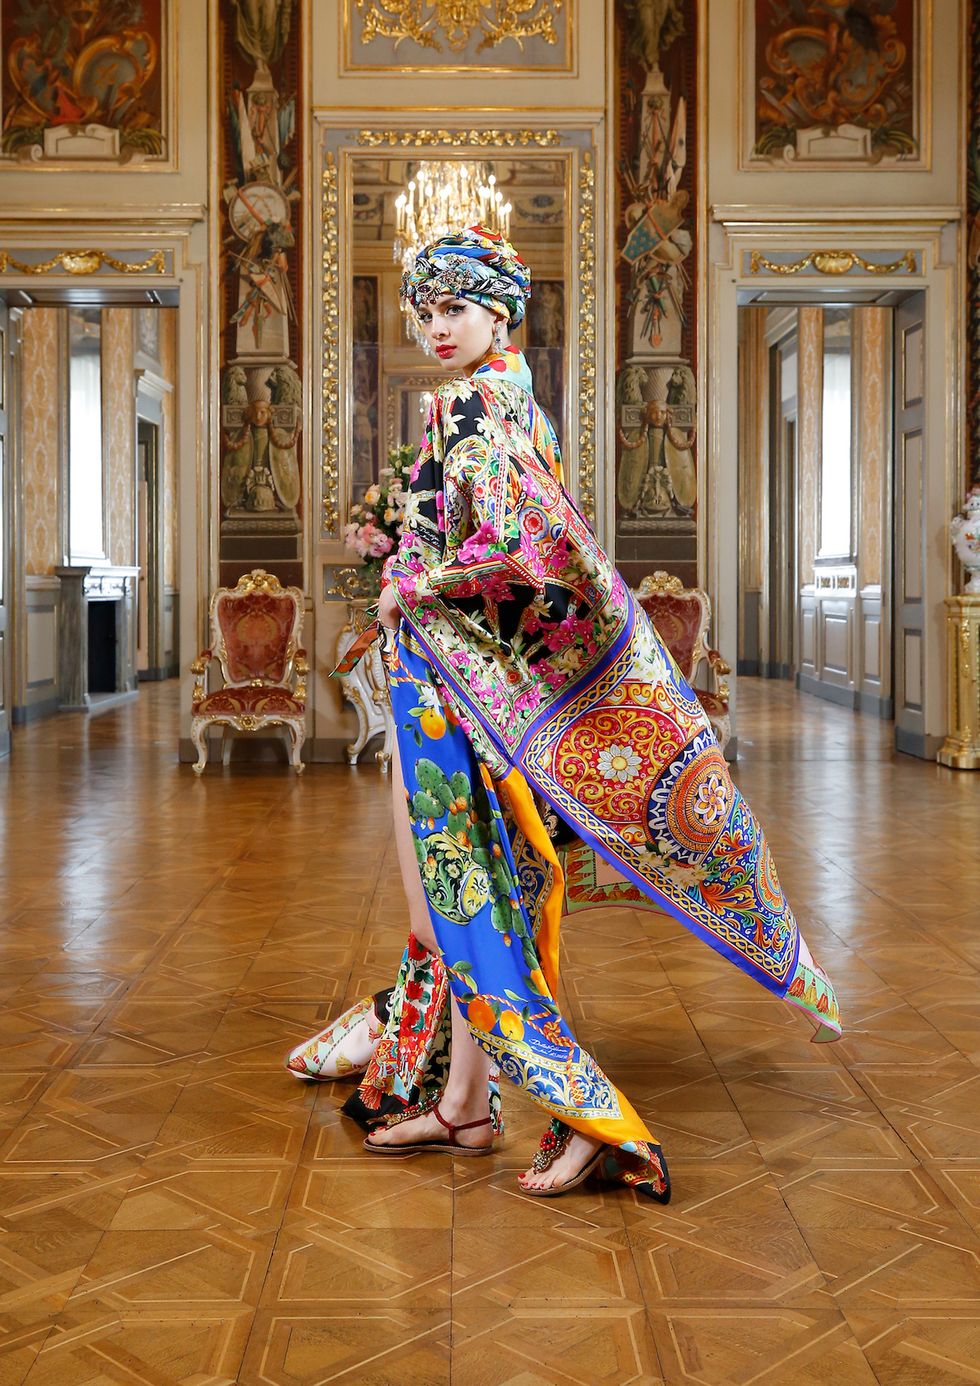 Uartig evne pianist Dolce & Gabbana Unveils a Virtual Alta Moda Spectacular